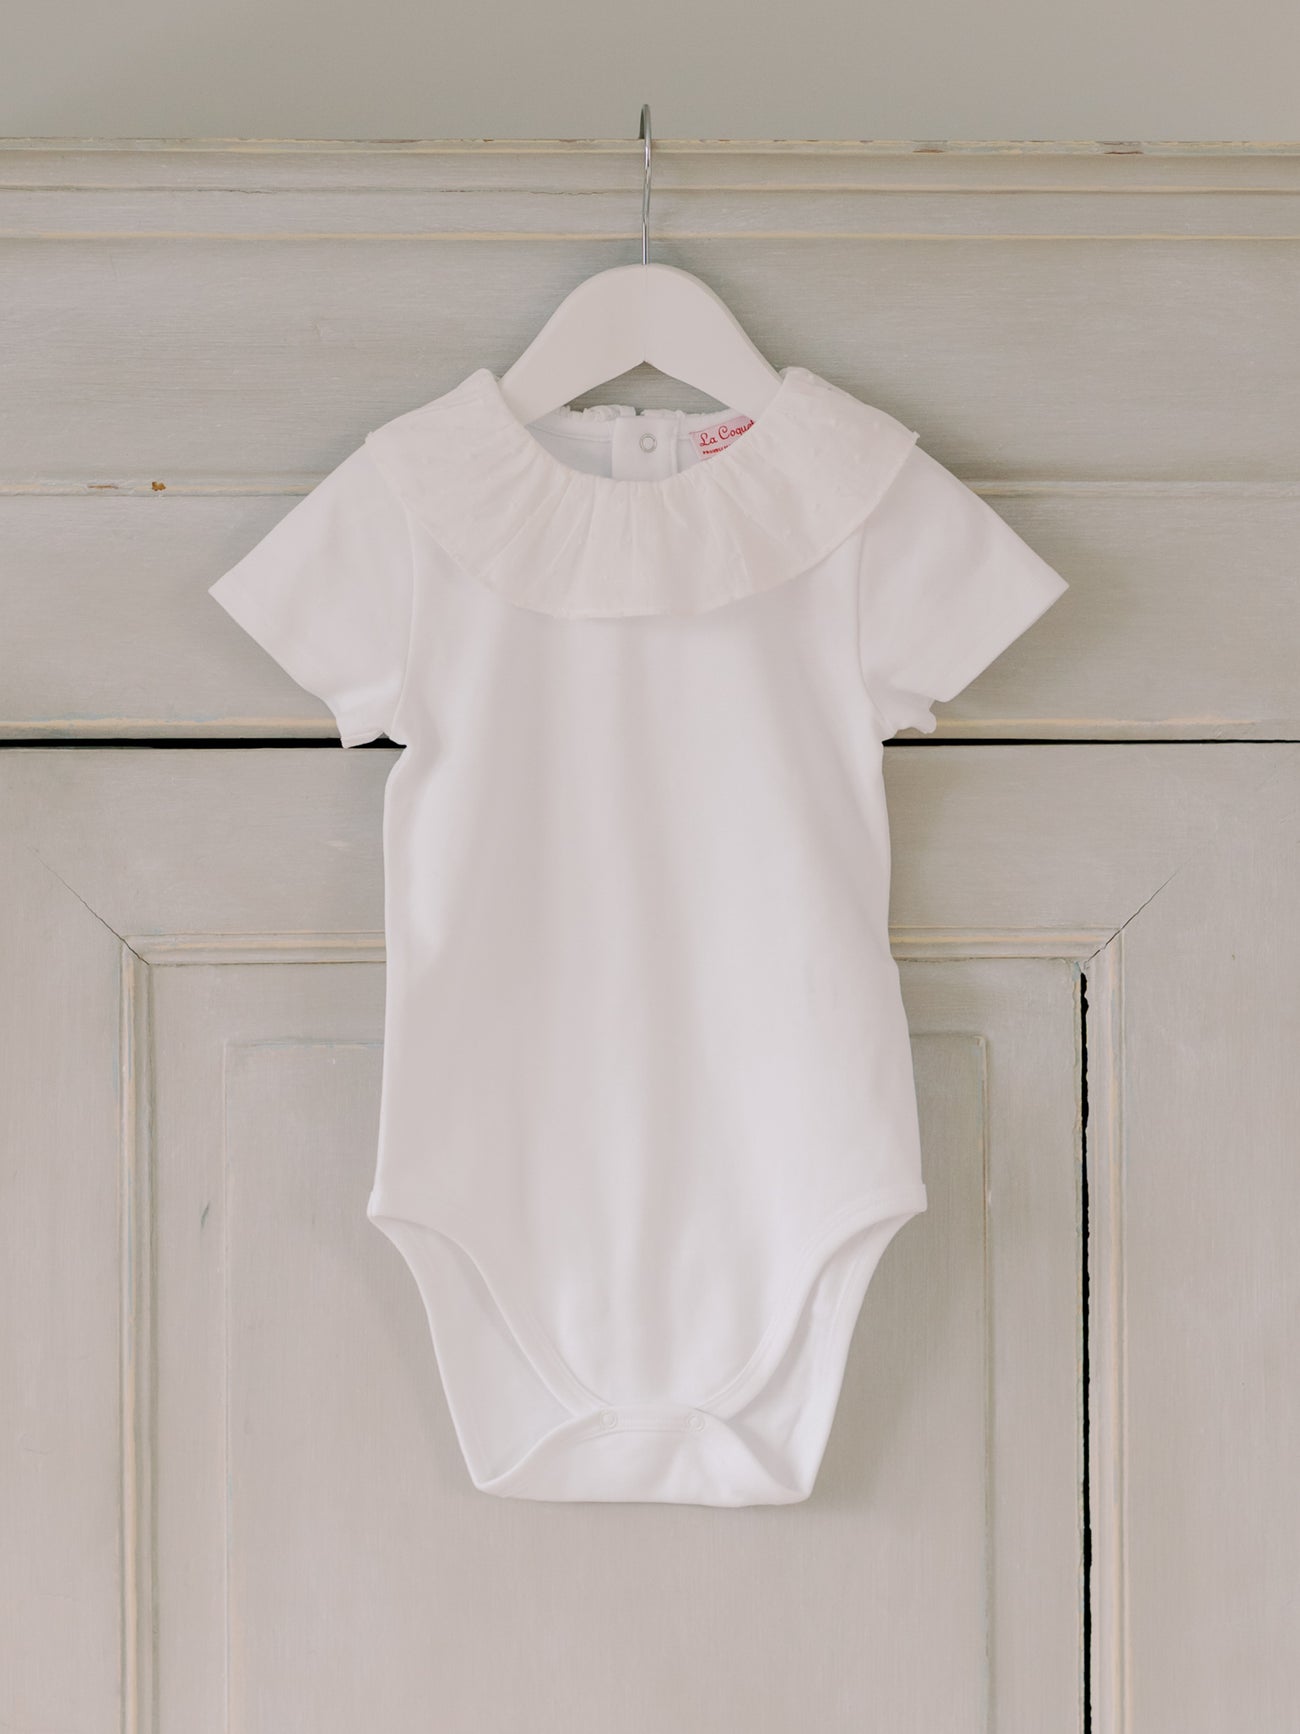 White Pluma Cotton Baby Bodysuit